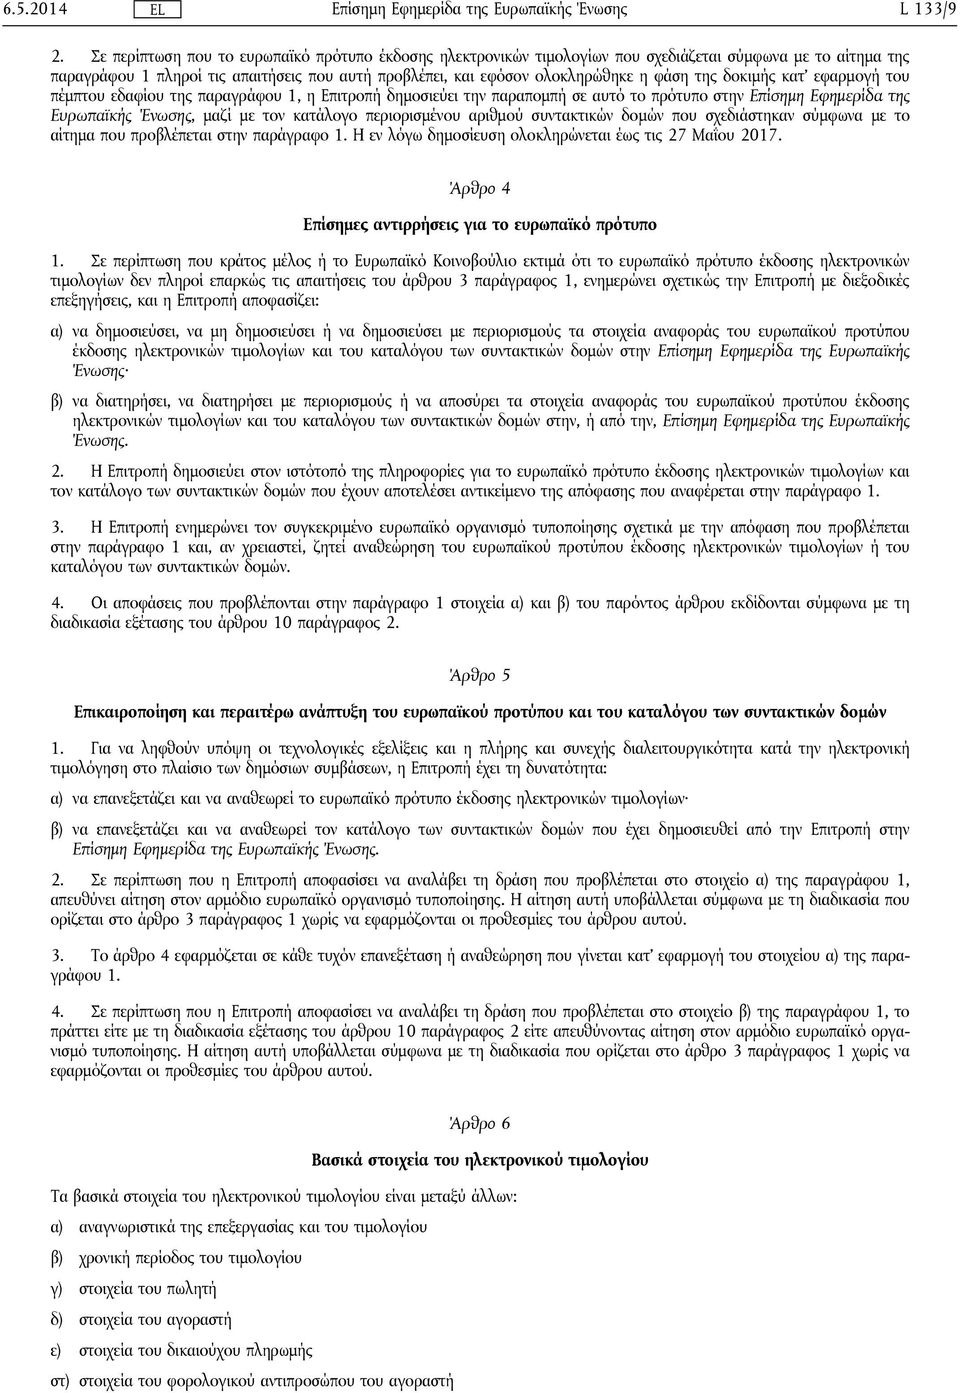 της δοκιμής κατ' εφαρμογή του πέμπτου εδαφίου της παραγράφου 1, η Επιτροπή δημοσιεύει την παραπομπή σε αυτό το πρότυπο στην Επίσημη Εφημερίδα της Ευρωπαϊκής Ένωσης, μαζί με τον κατάλογο περιορισμένου